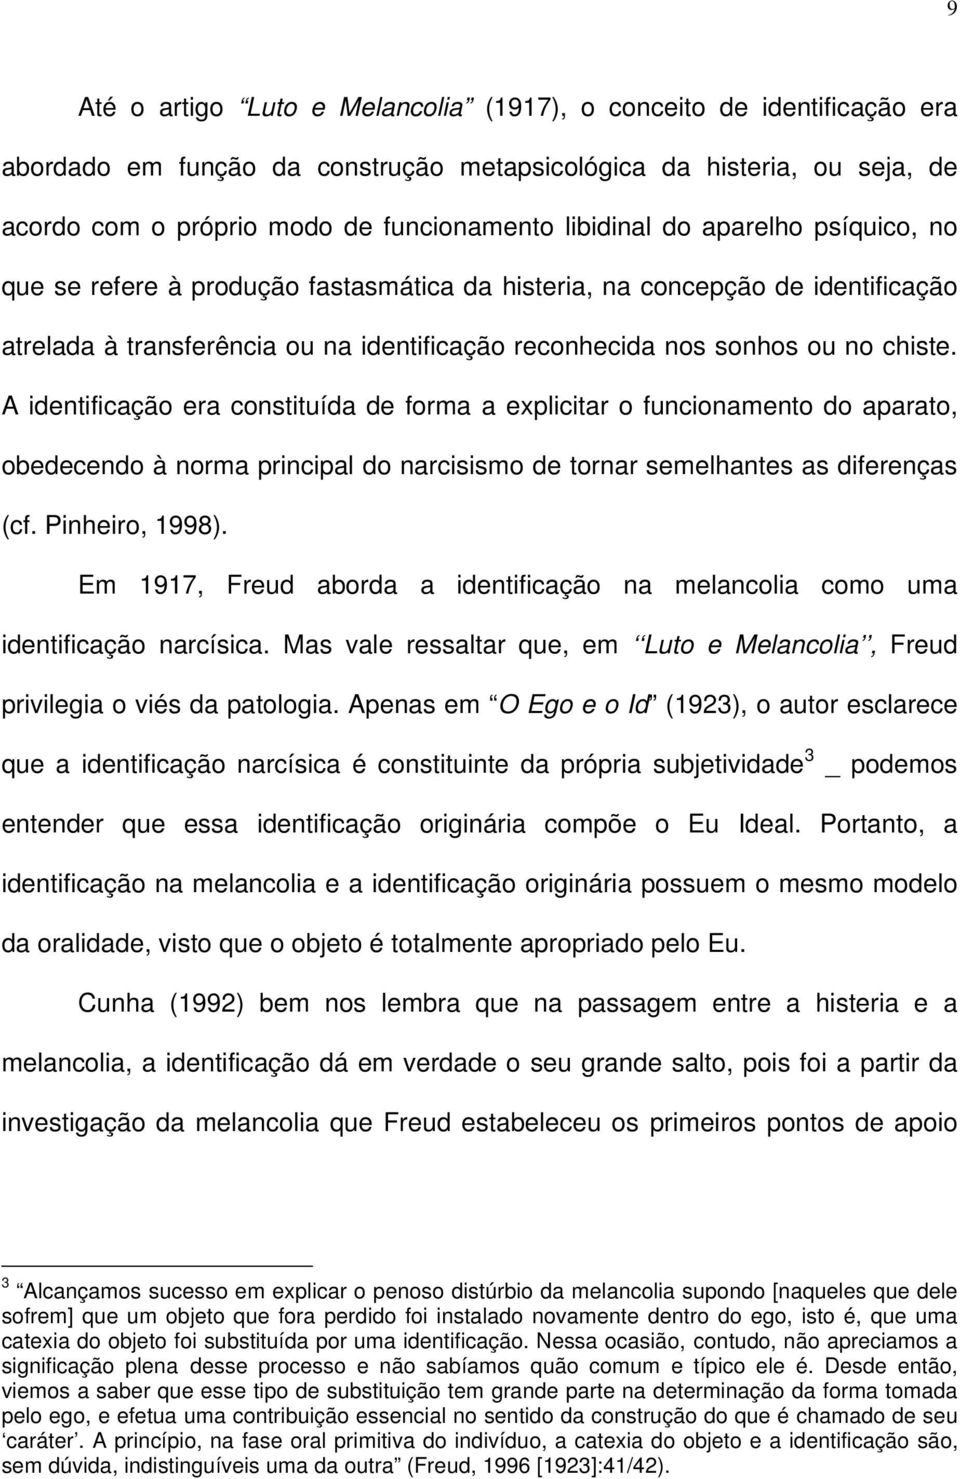 A identificação era constituída de forma a explicitar o funcionamento do aparato, obedecendo à norma principal do narcisismo de tornar semelhantes as diferenças (cf. Pinheiro, 1998).